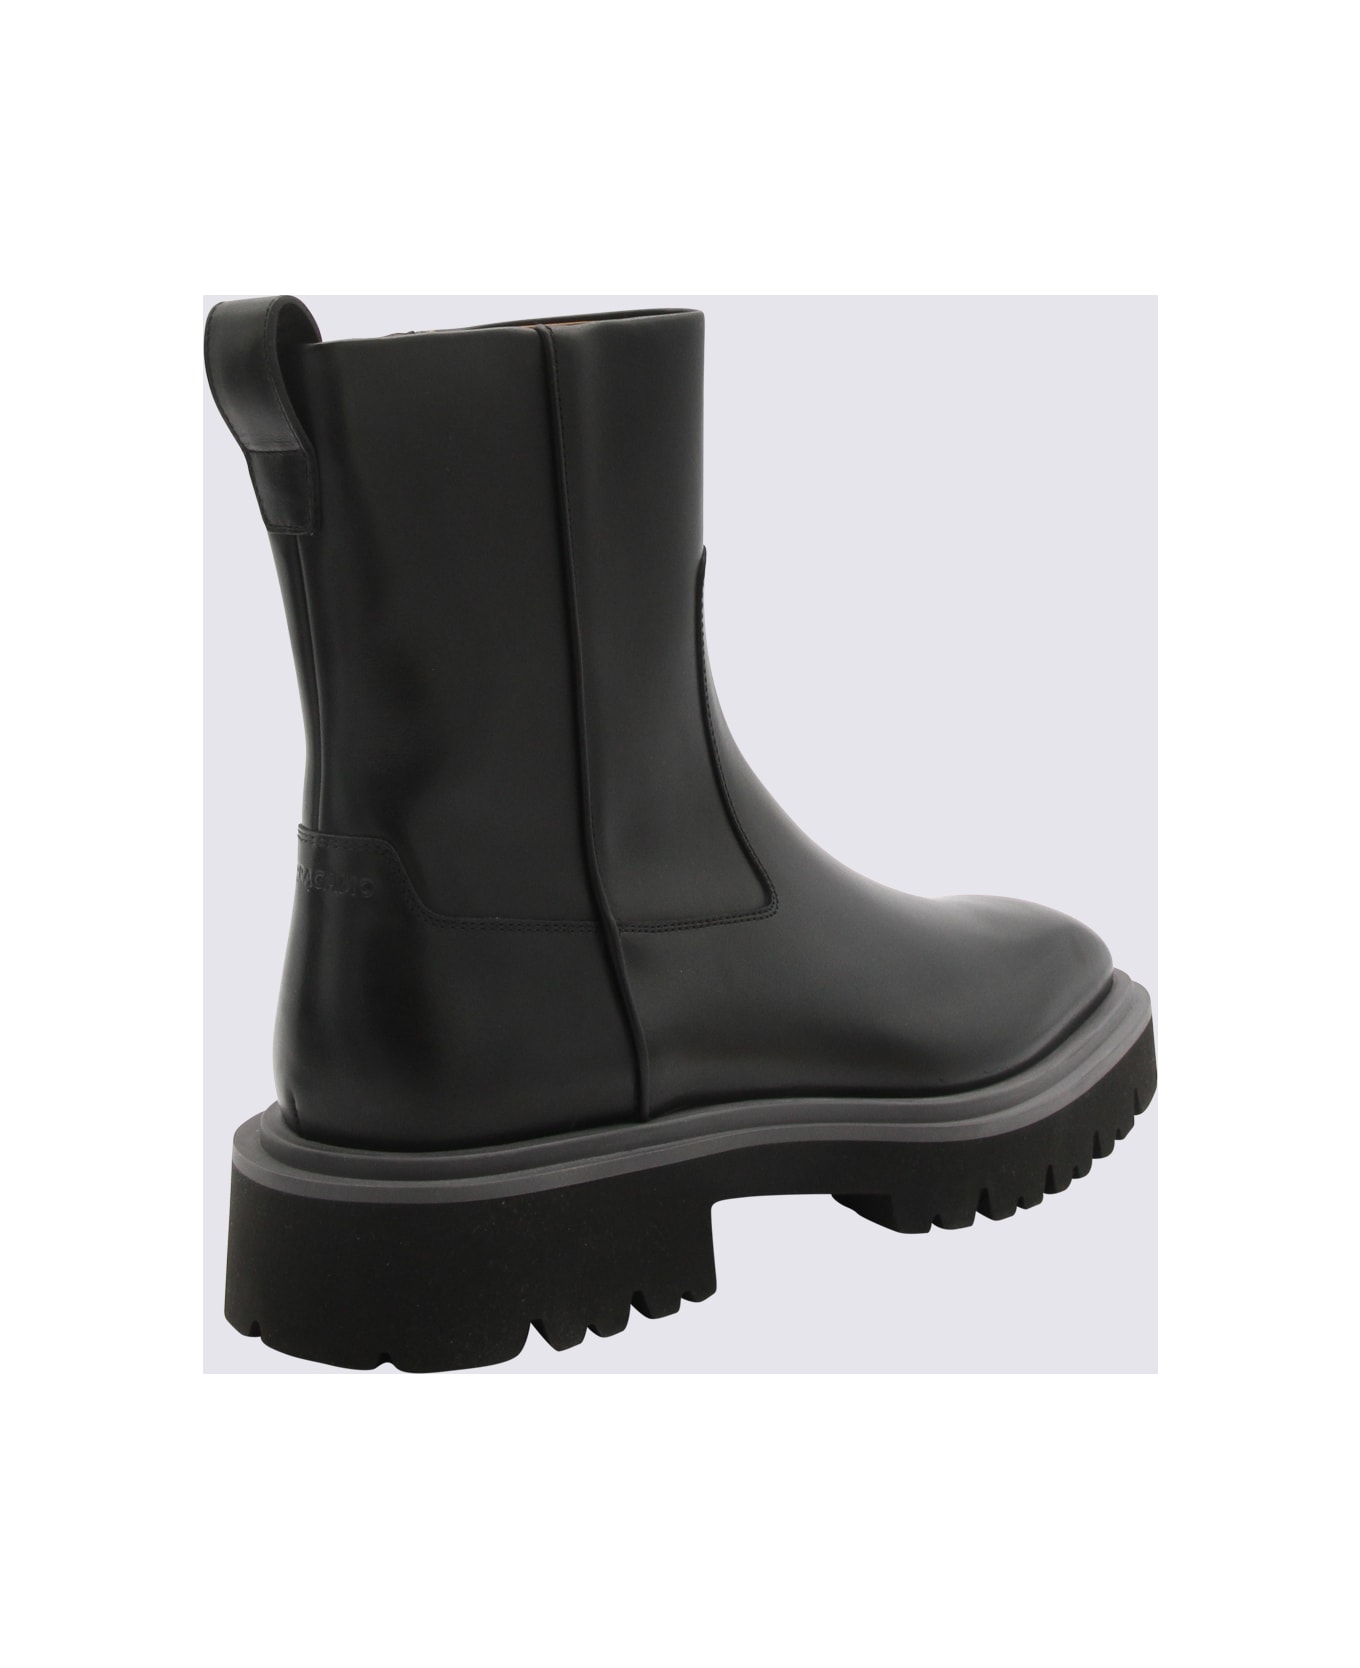 Ferragamo Black Leather Boots - NERO/NEW BISCOTTO